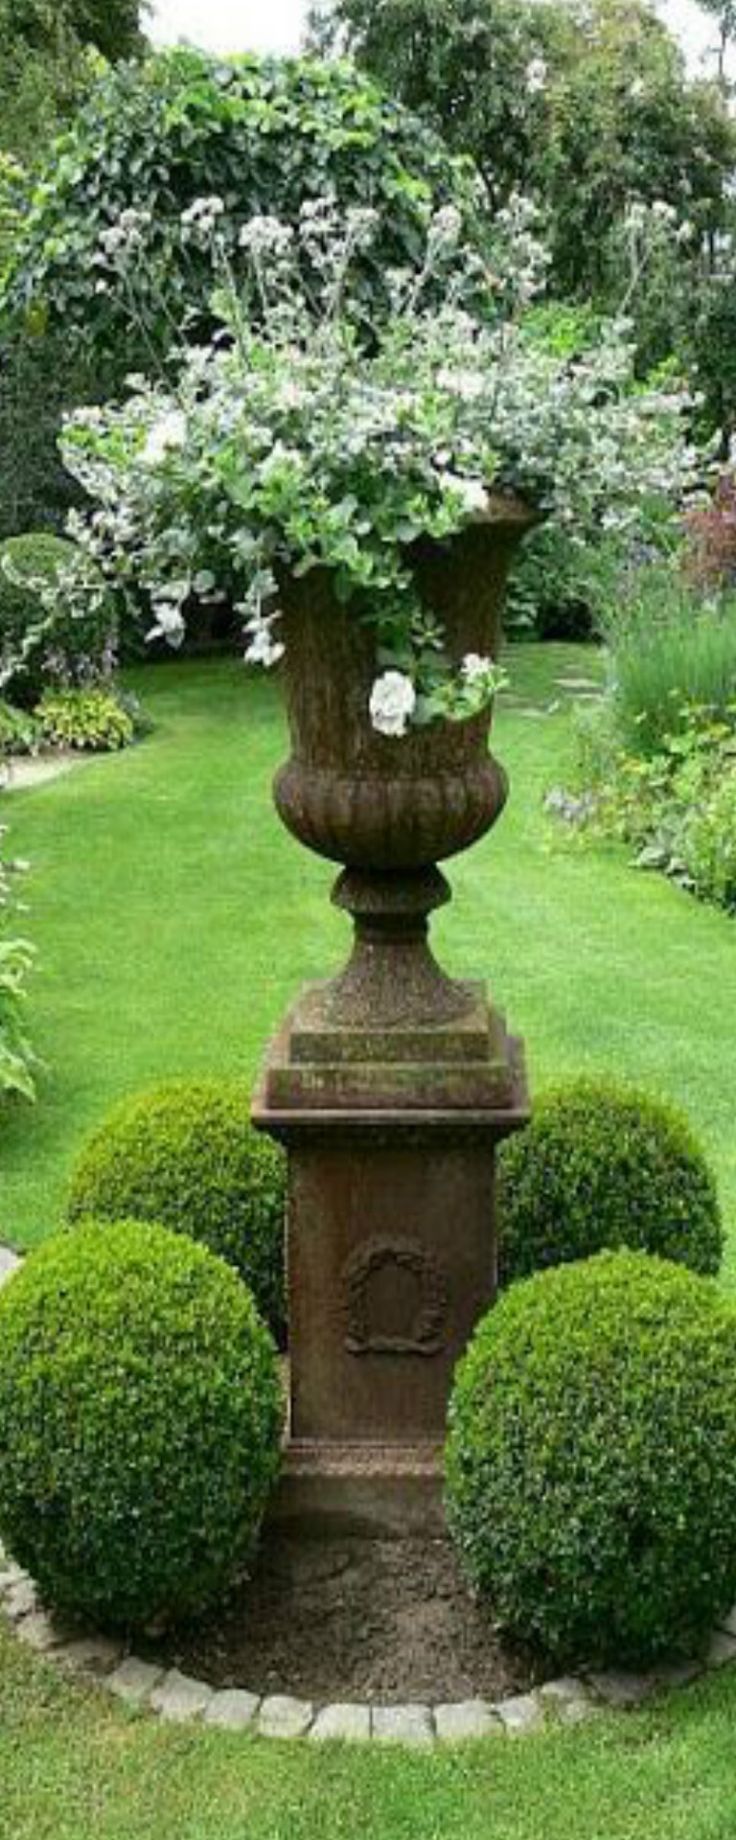 Gartendeko Stein Schön Pin Von Judy Freeman Auf Victorian Planted Urns